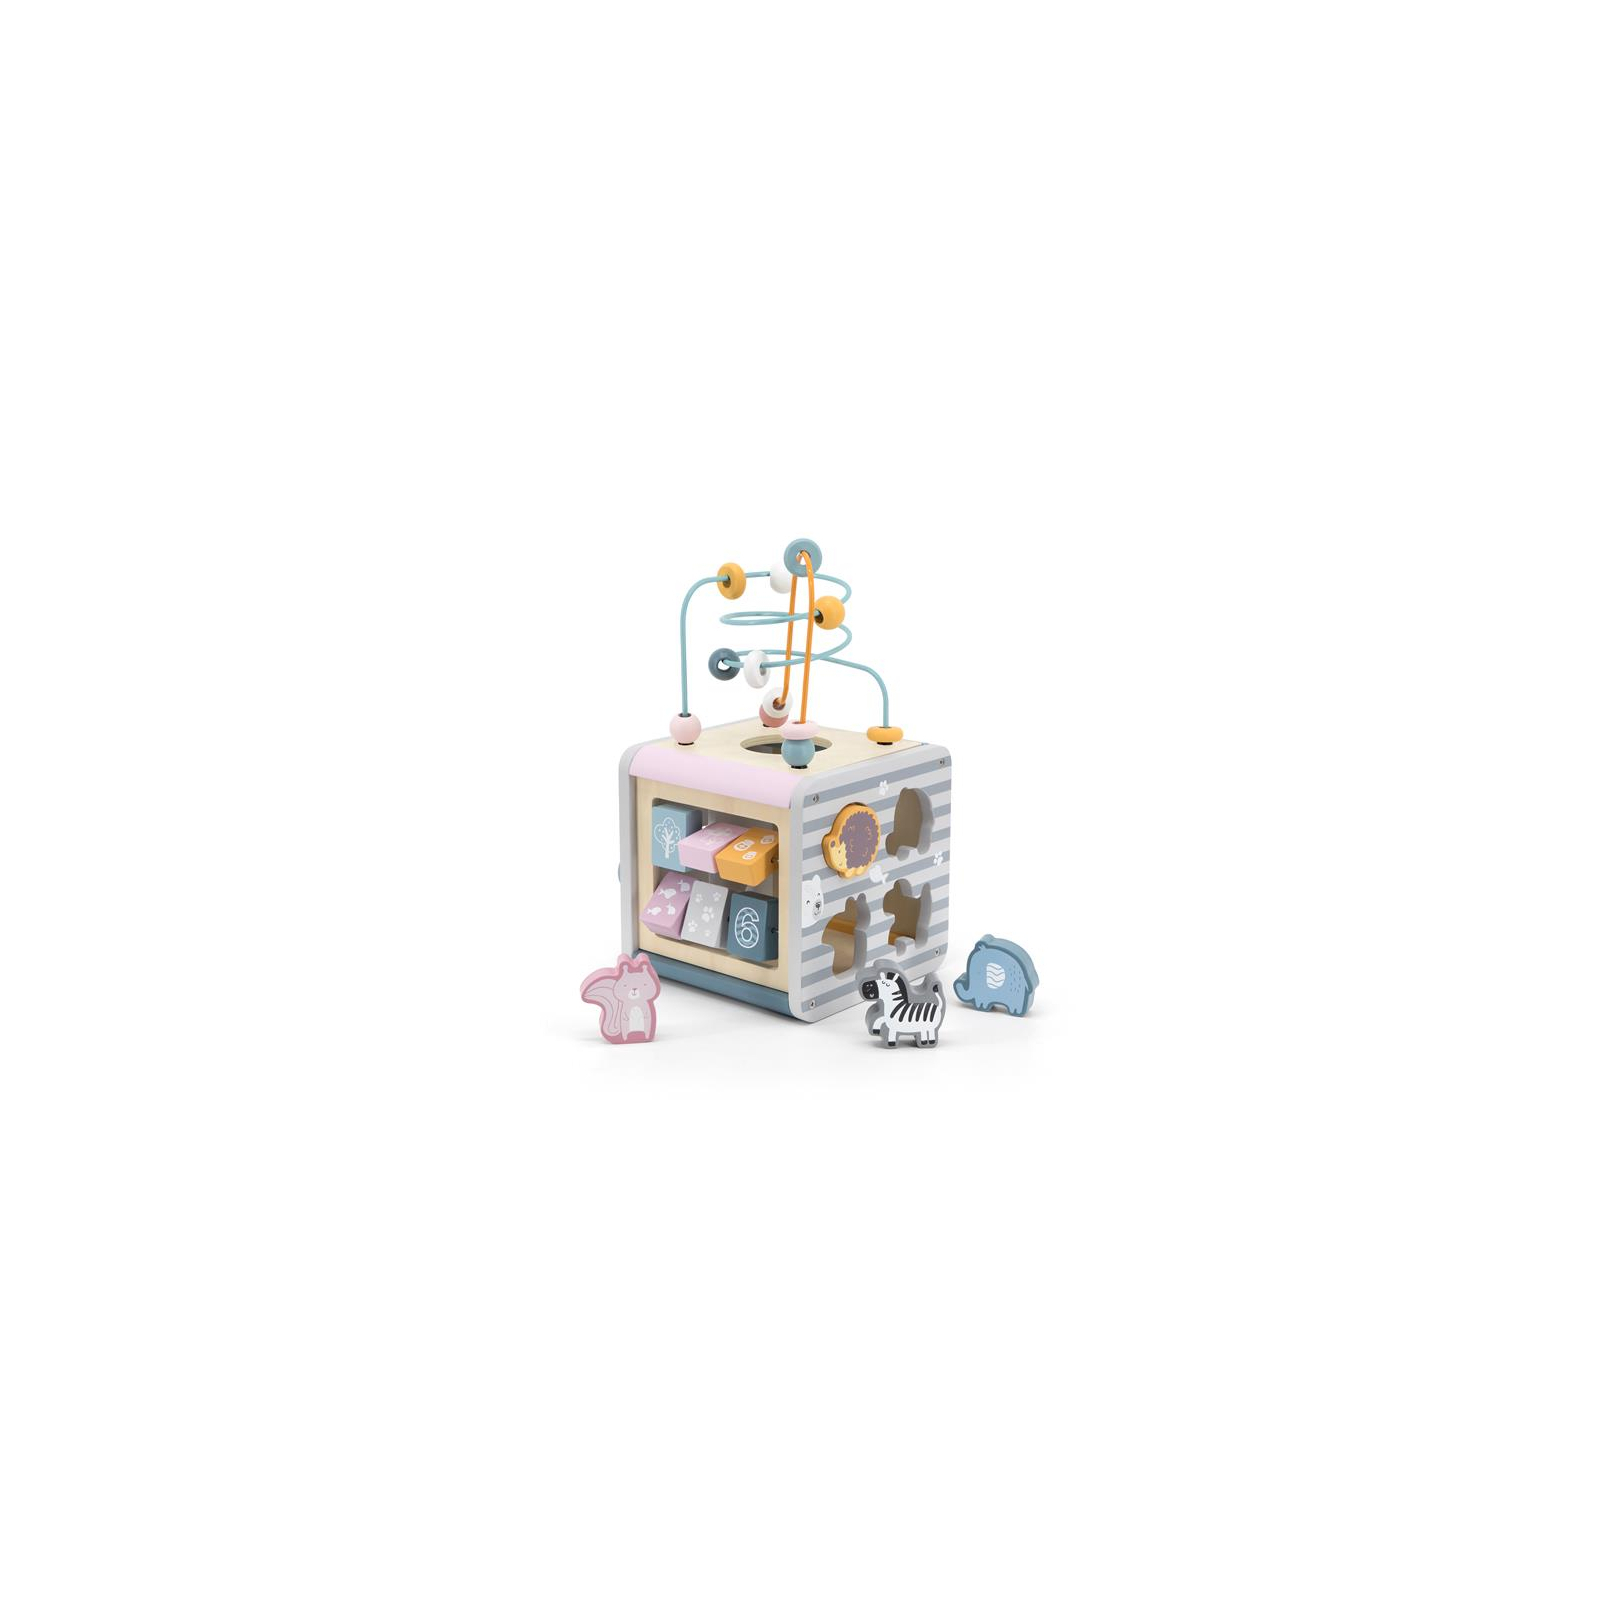 Развивающая игрушка Viga Toys Игровой центр PolarB Кубик 5-в-1 (44030)